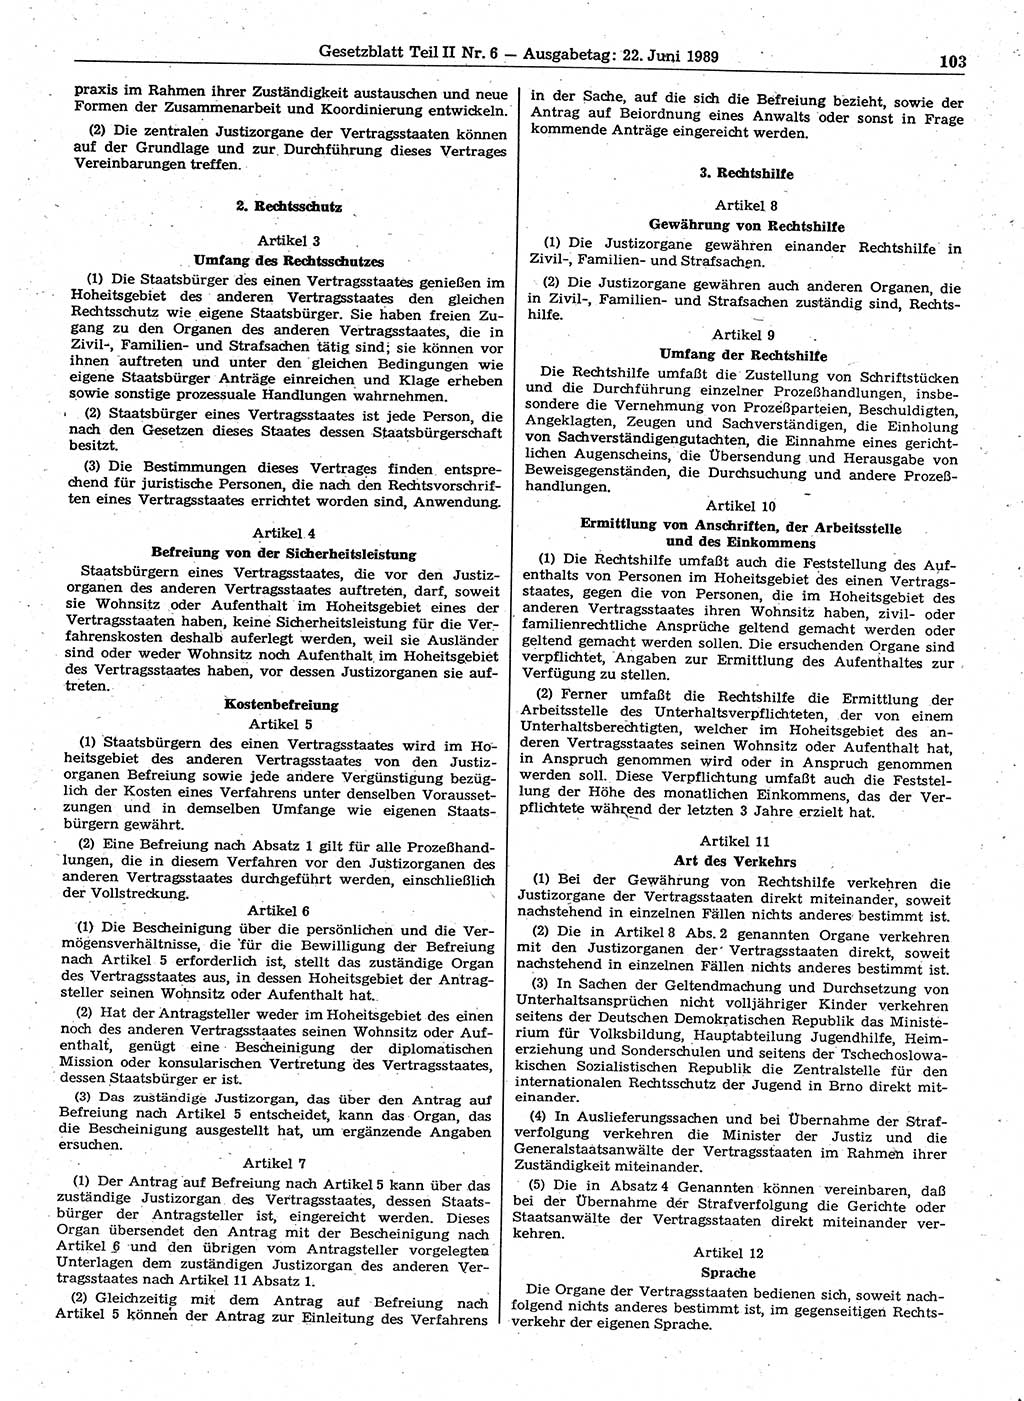 Gesetzblatt (GBl.) der Deutschen Demokratischen Republik (DDR) Teil ⅠⅠ 1989, Seite 103 (GBl. DDR ⅠⅠ 1989, S. 103)